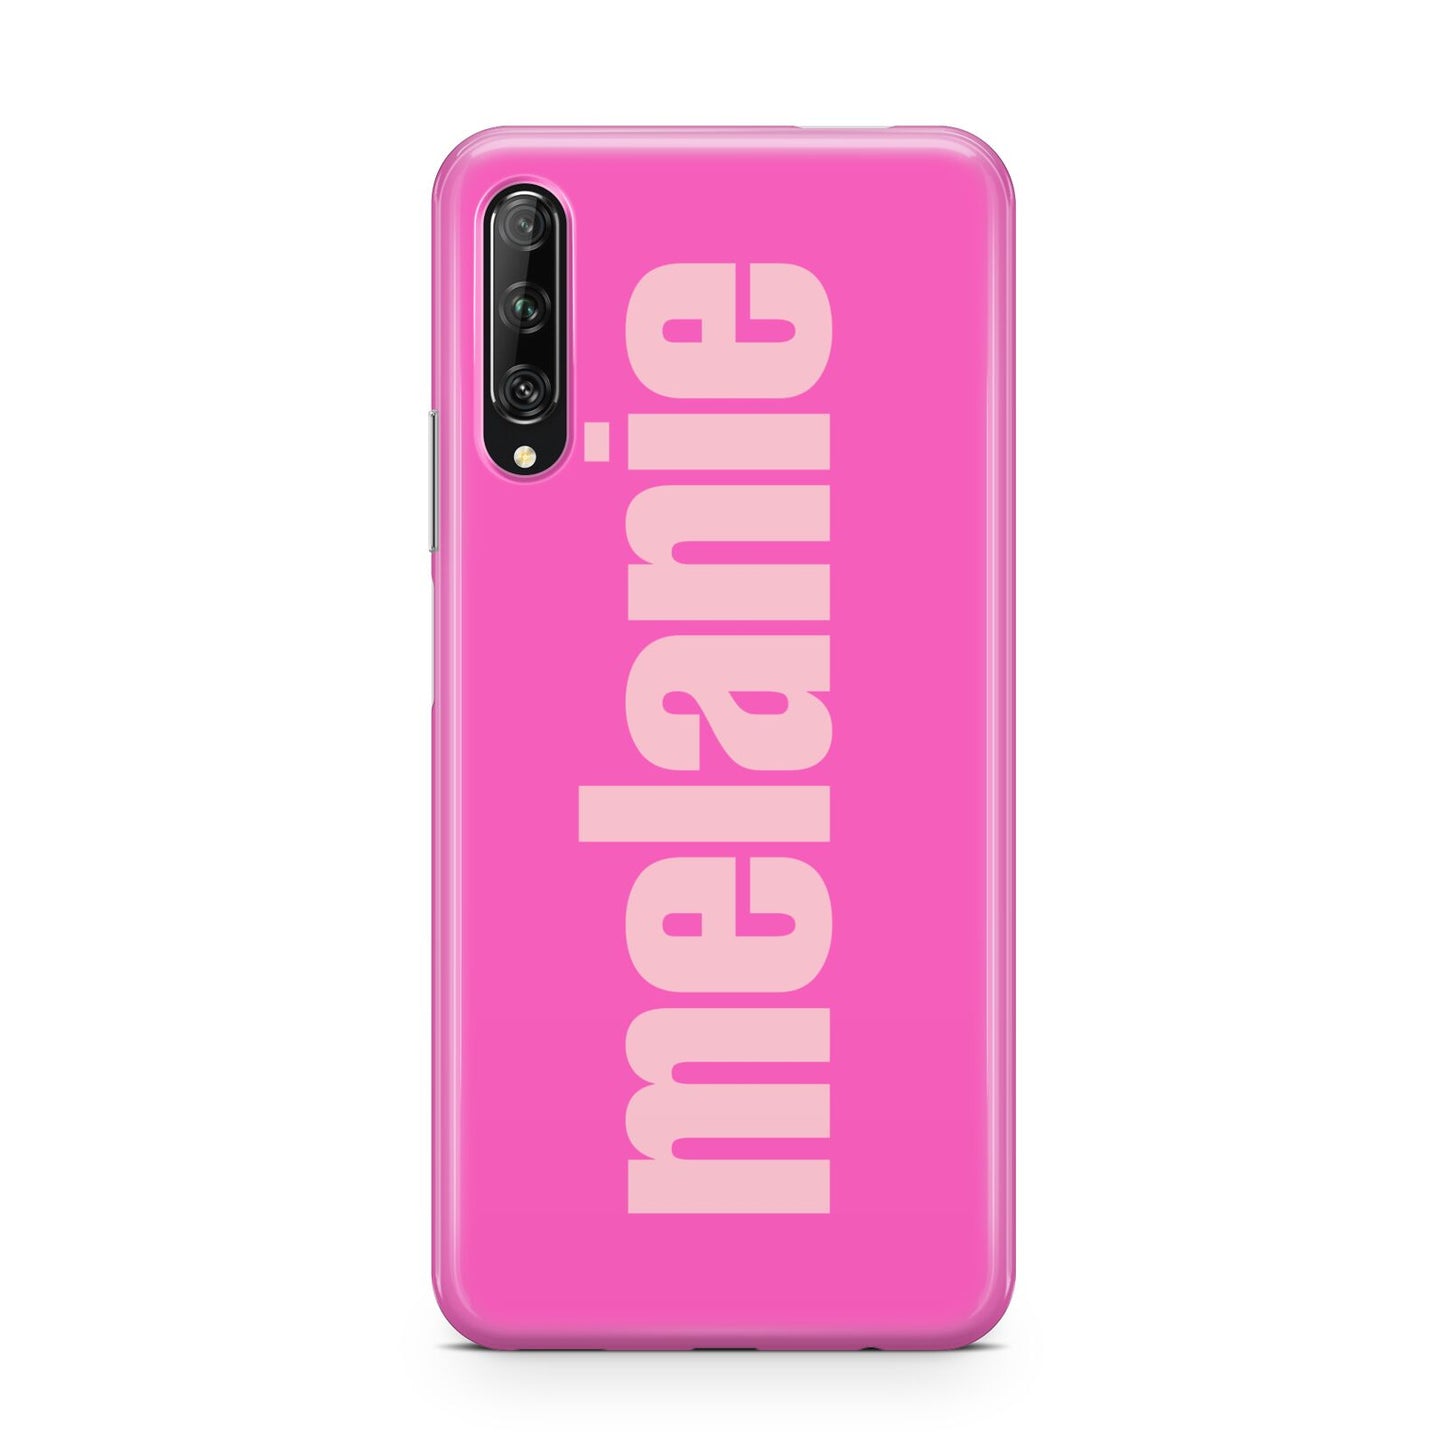 Personalised Pink Huawei P Smart Pro 2019